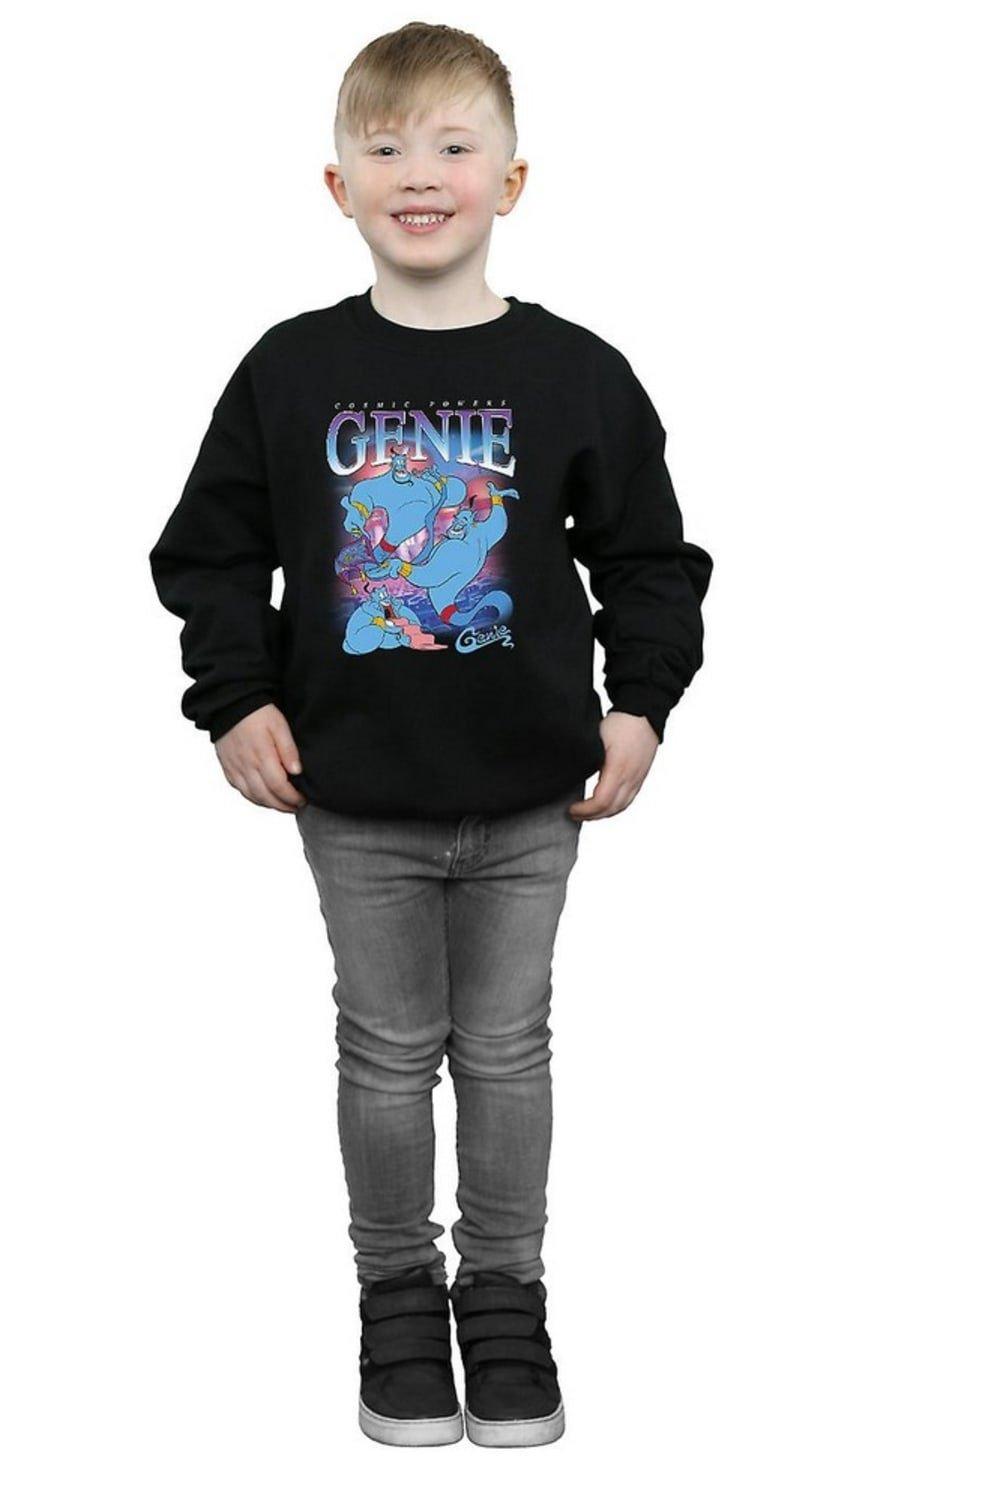 Genie Montage Sweatshirt